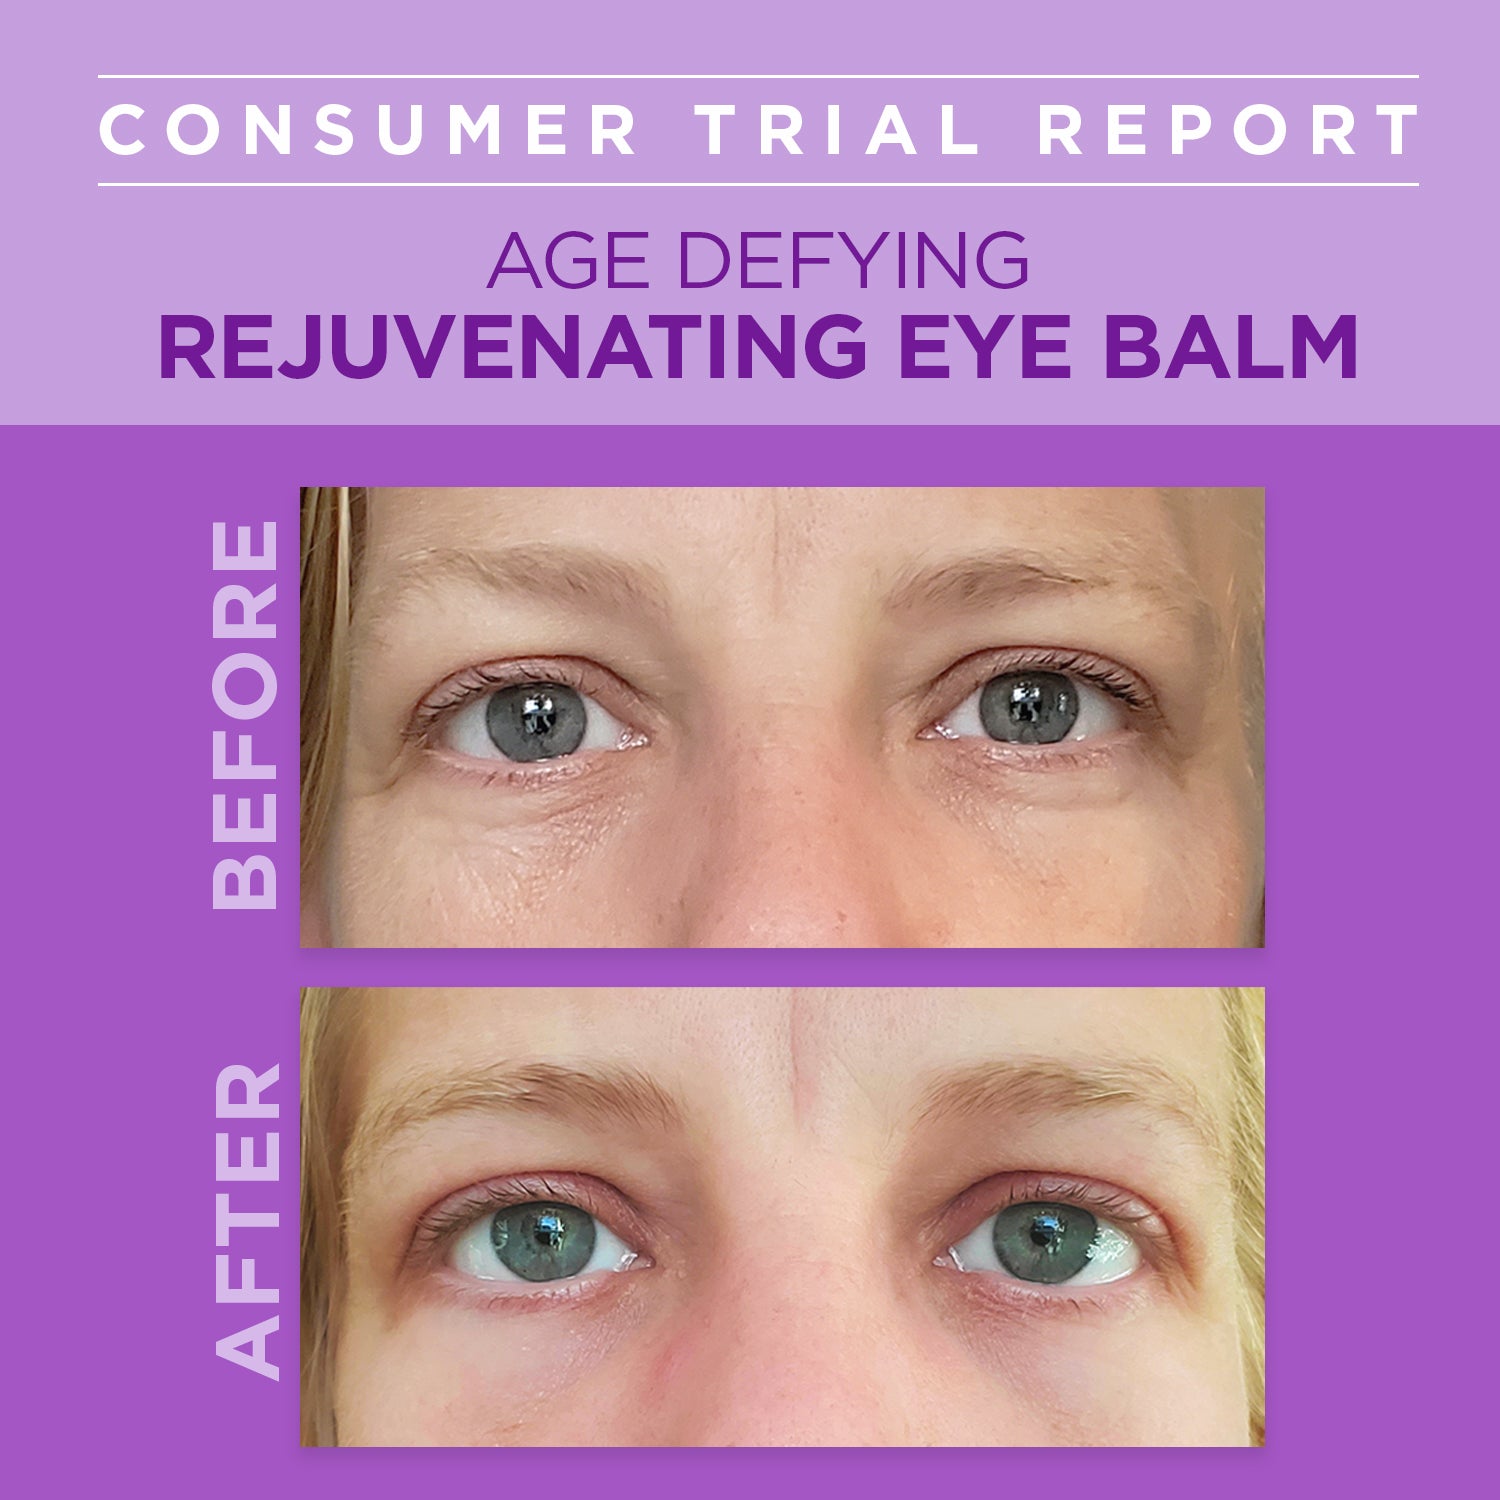 Age Defying Rejuvenating Plant-Based Retinol Alternative Eye Balm